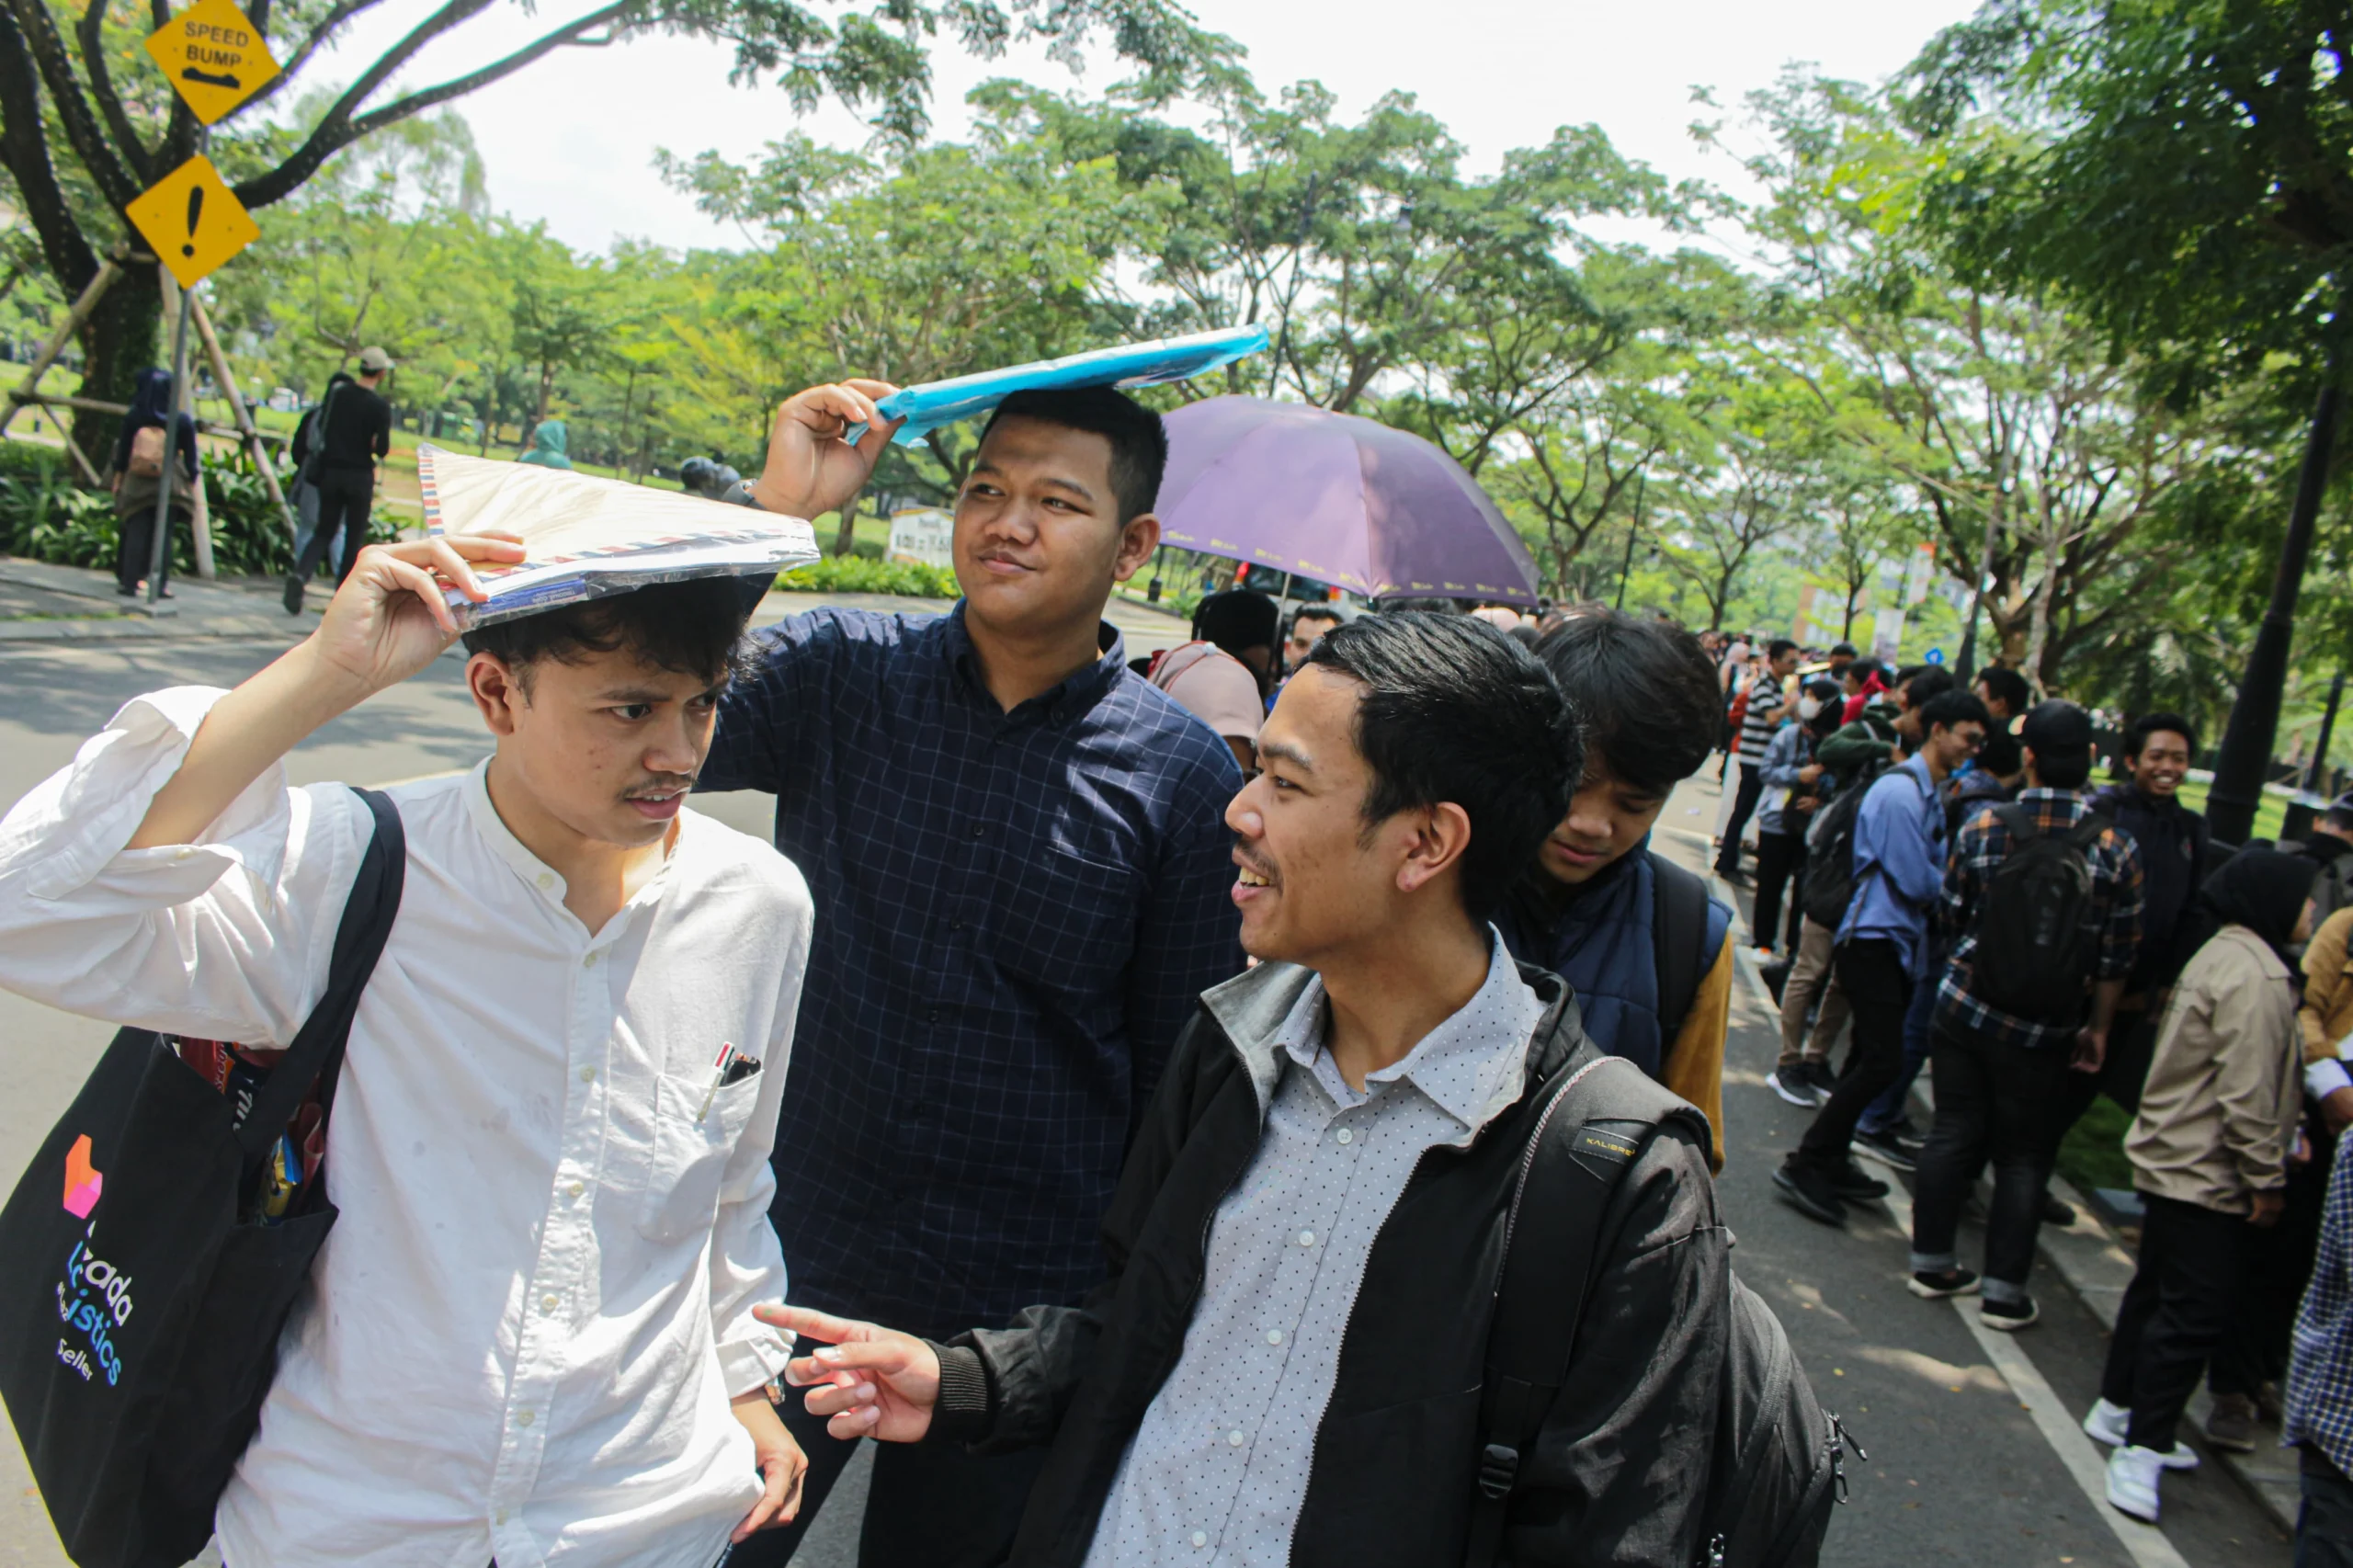 Calon pelamar kerja mengantre dalam event Job Fair di Kiara Artha Park, Kota Bandung. (Pandu Muslim/Jabar Ekspres)